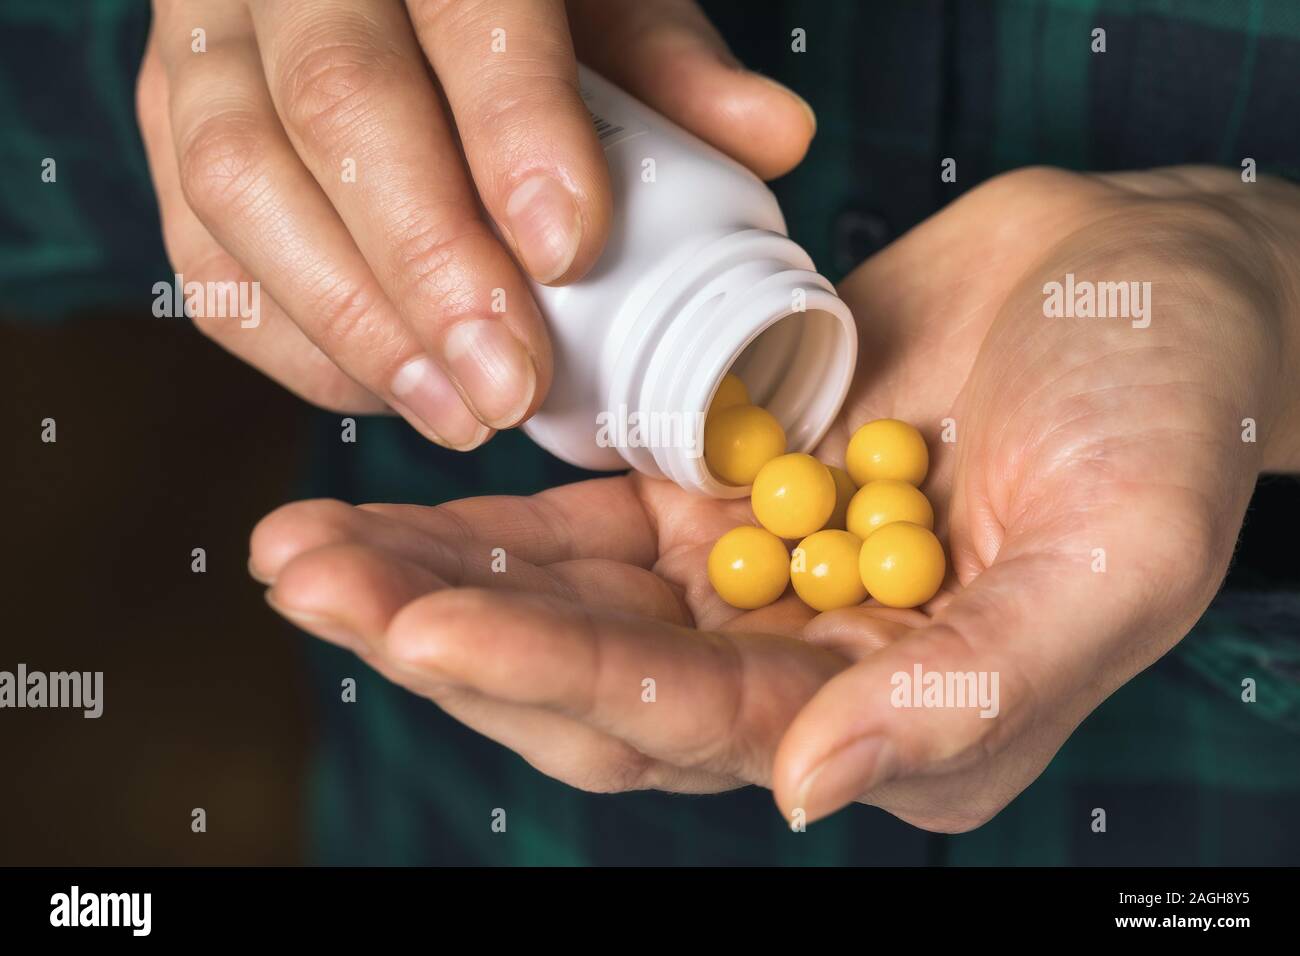 Ein Mann gießt Vitamine aus der Durchstechflasche in einen Palm, close-up Stockfoto